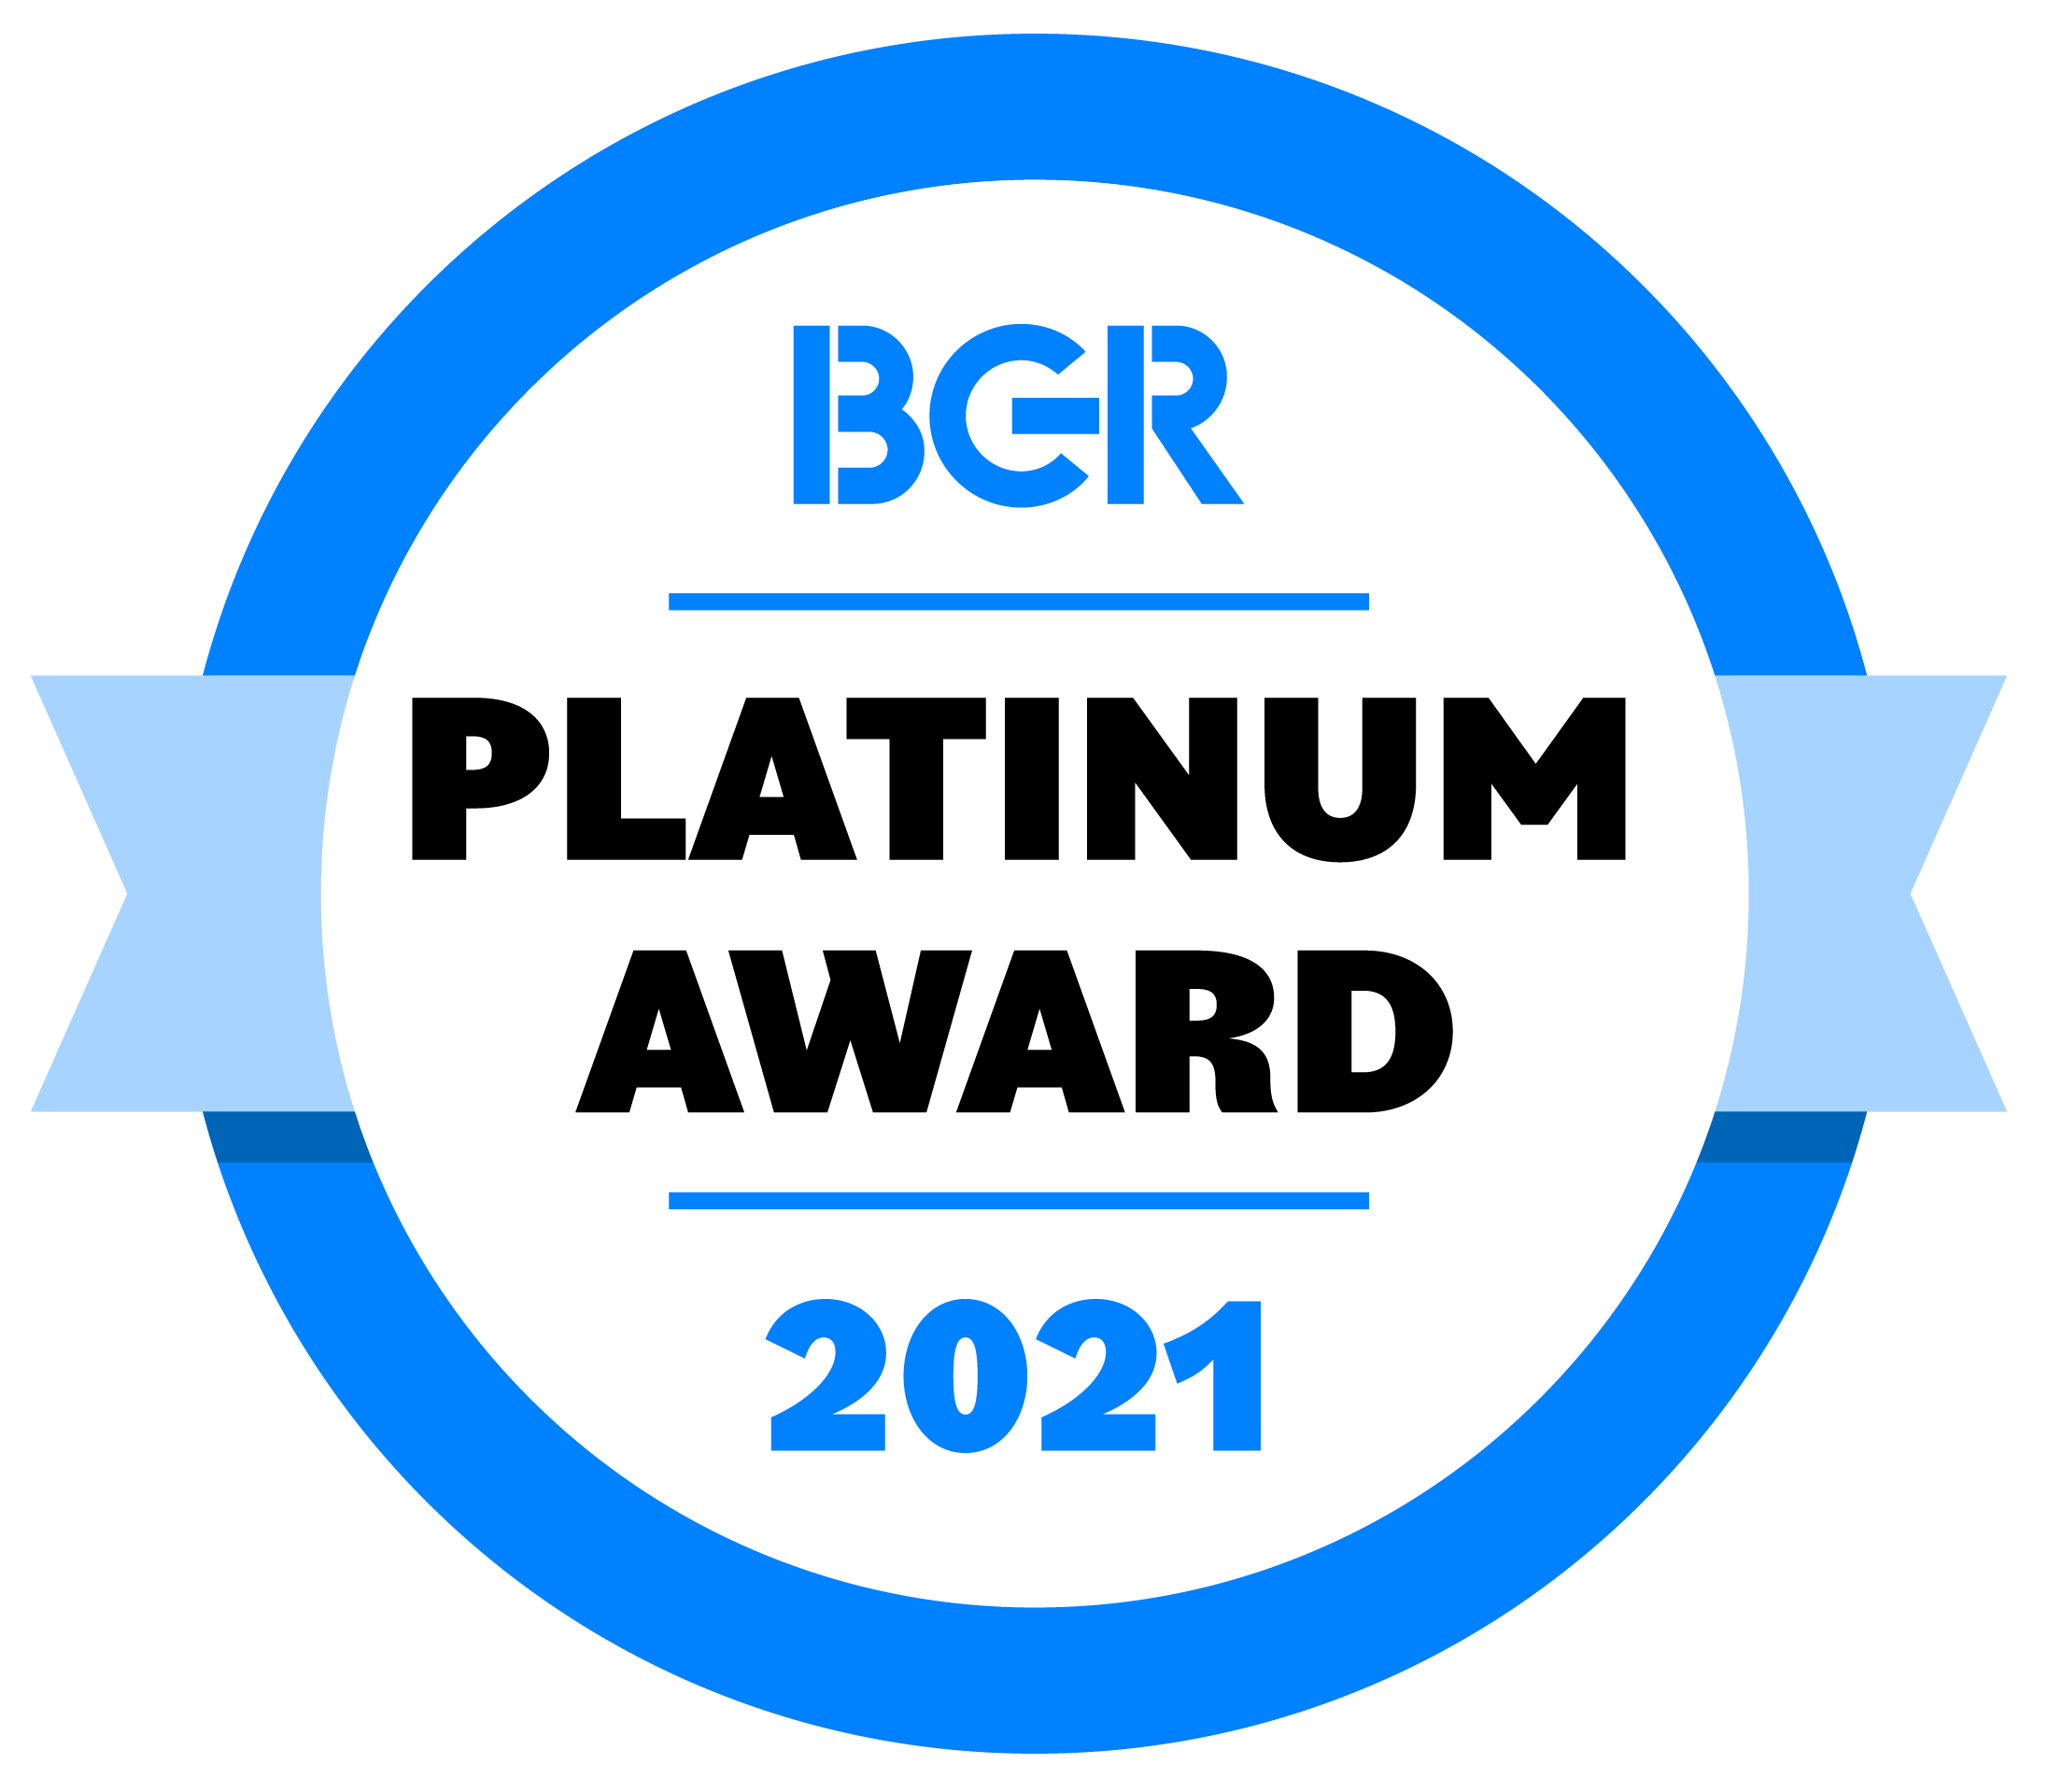 BGR Platinum Award 2021